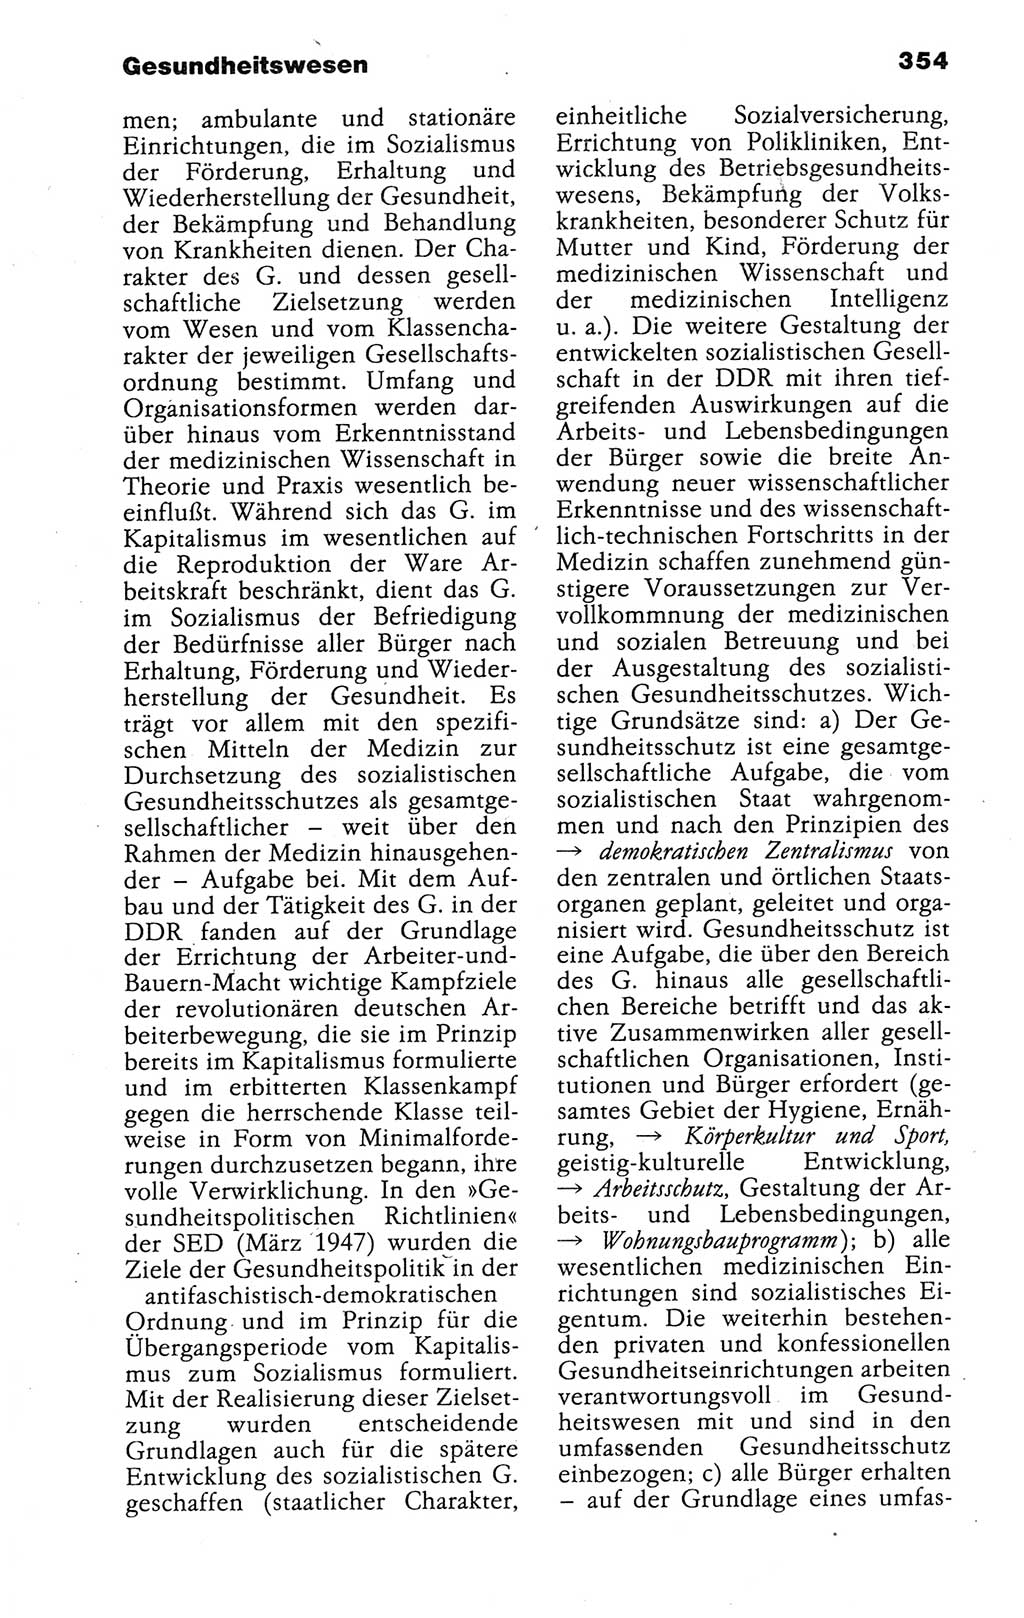 Kleines politisches Wörterbuch [Deutsche Demokratische Republik (DDR)] 1988, Seite 354 (Kl. pol. Wb. DDR 1988, S. 354)